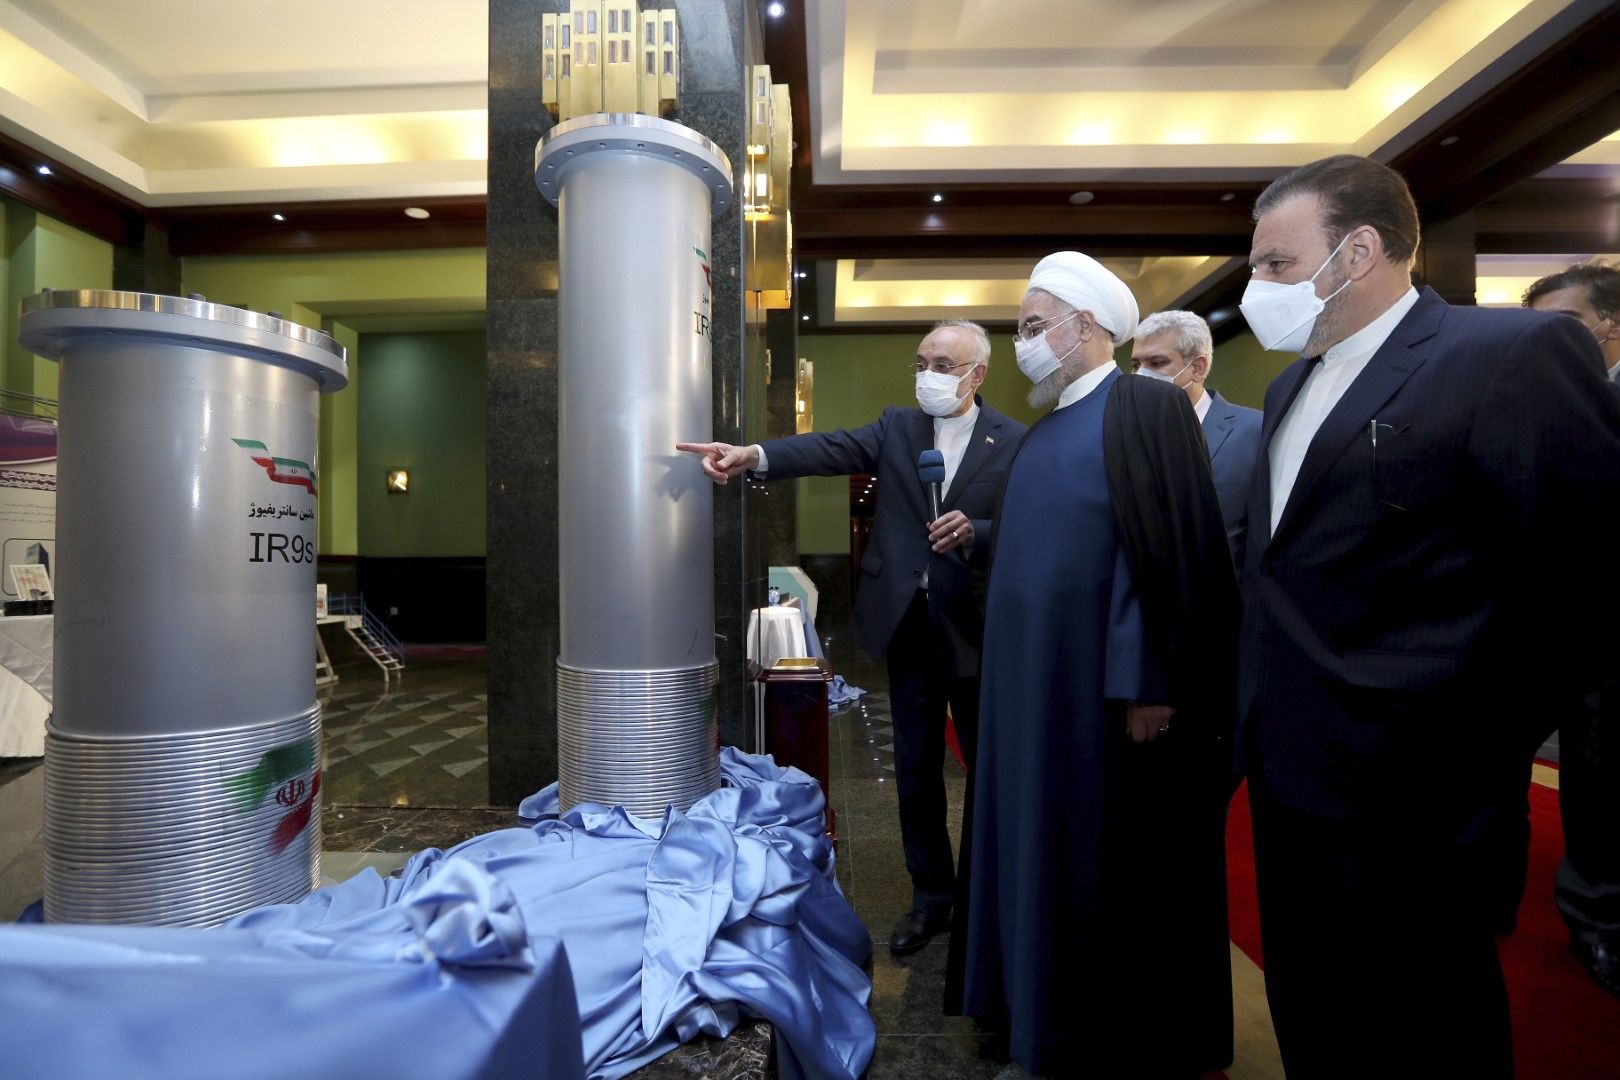 Президентът Хасан Рохани, вторият отдясно, слуша ръководителя на Организацията за атомна енергия на Иран Али Акбар Салехи при демонстрация на новите ядрени постижения на Иран (центрофуги) в Техеран, Иран, на 10 април 2021 г. 